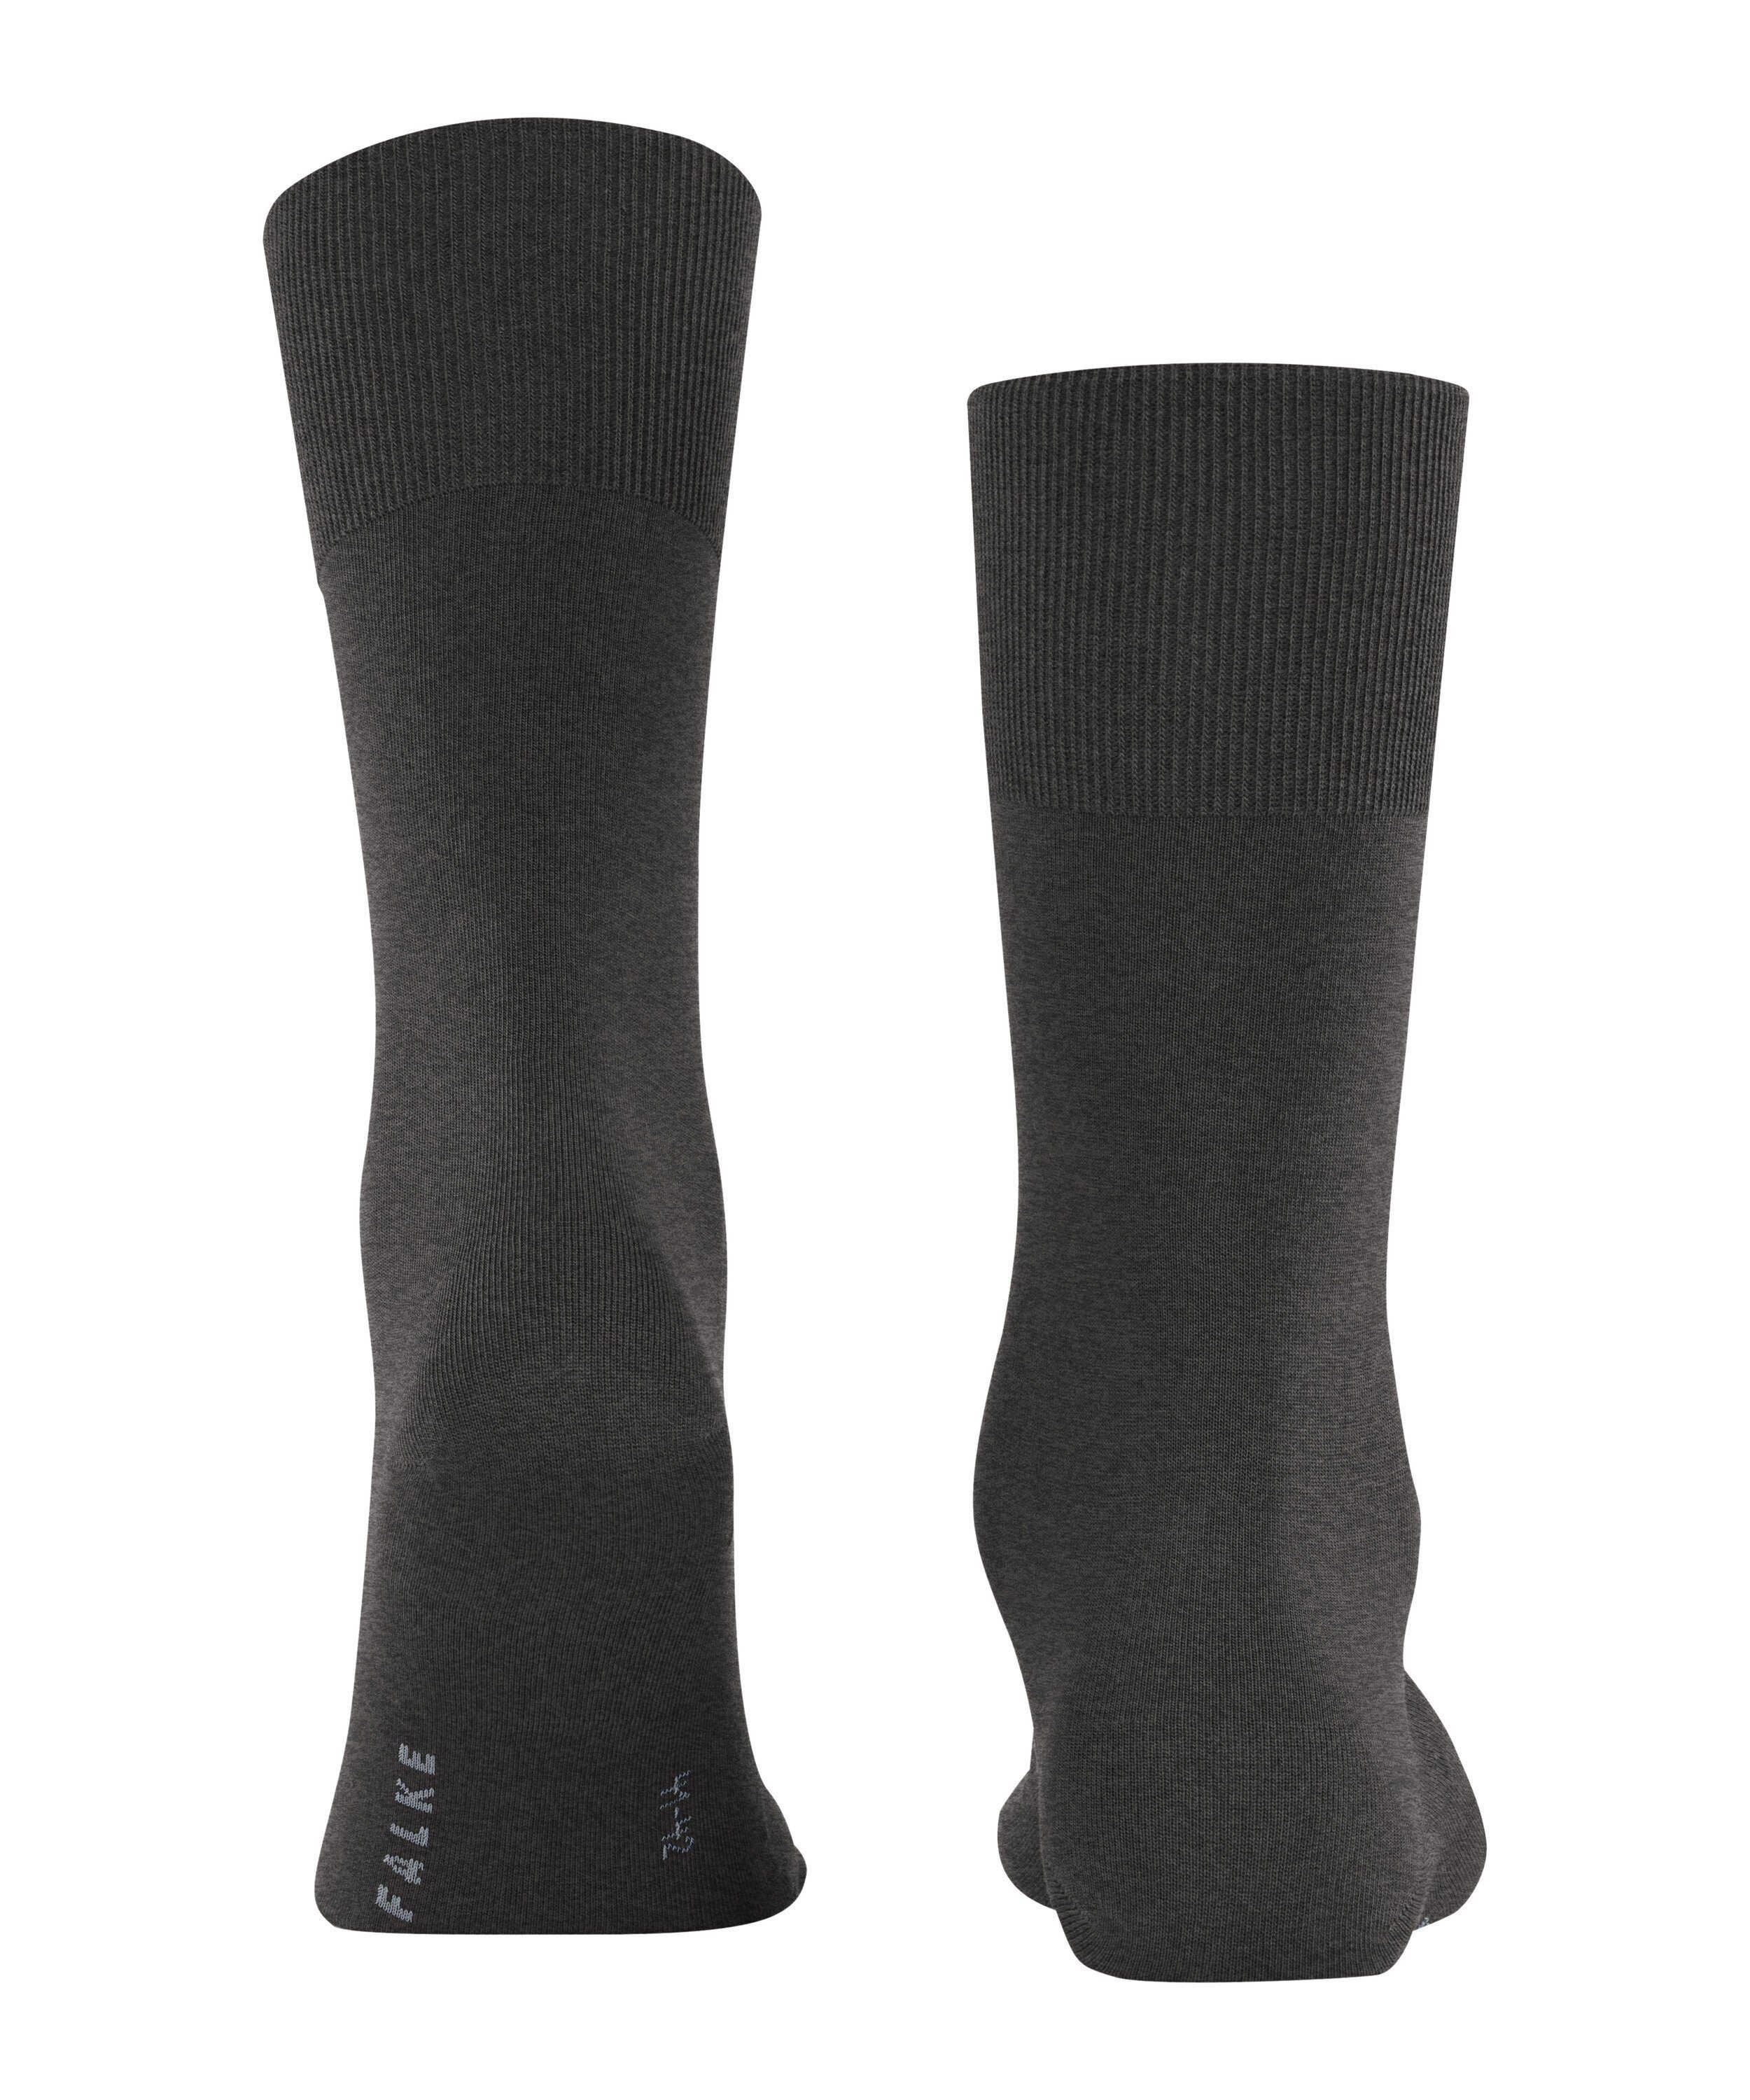 FALKE Socken ClimaWool (1-Paar) mel. anthra. (3117)